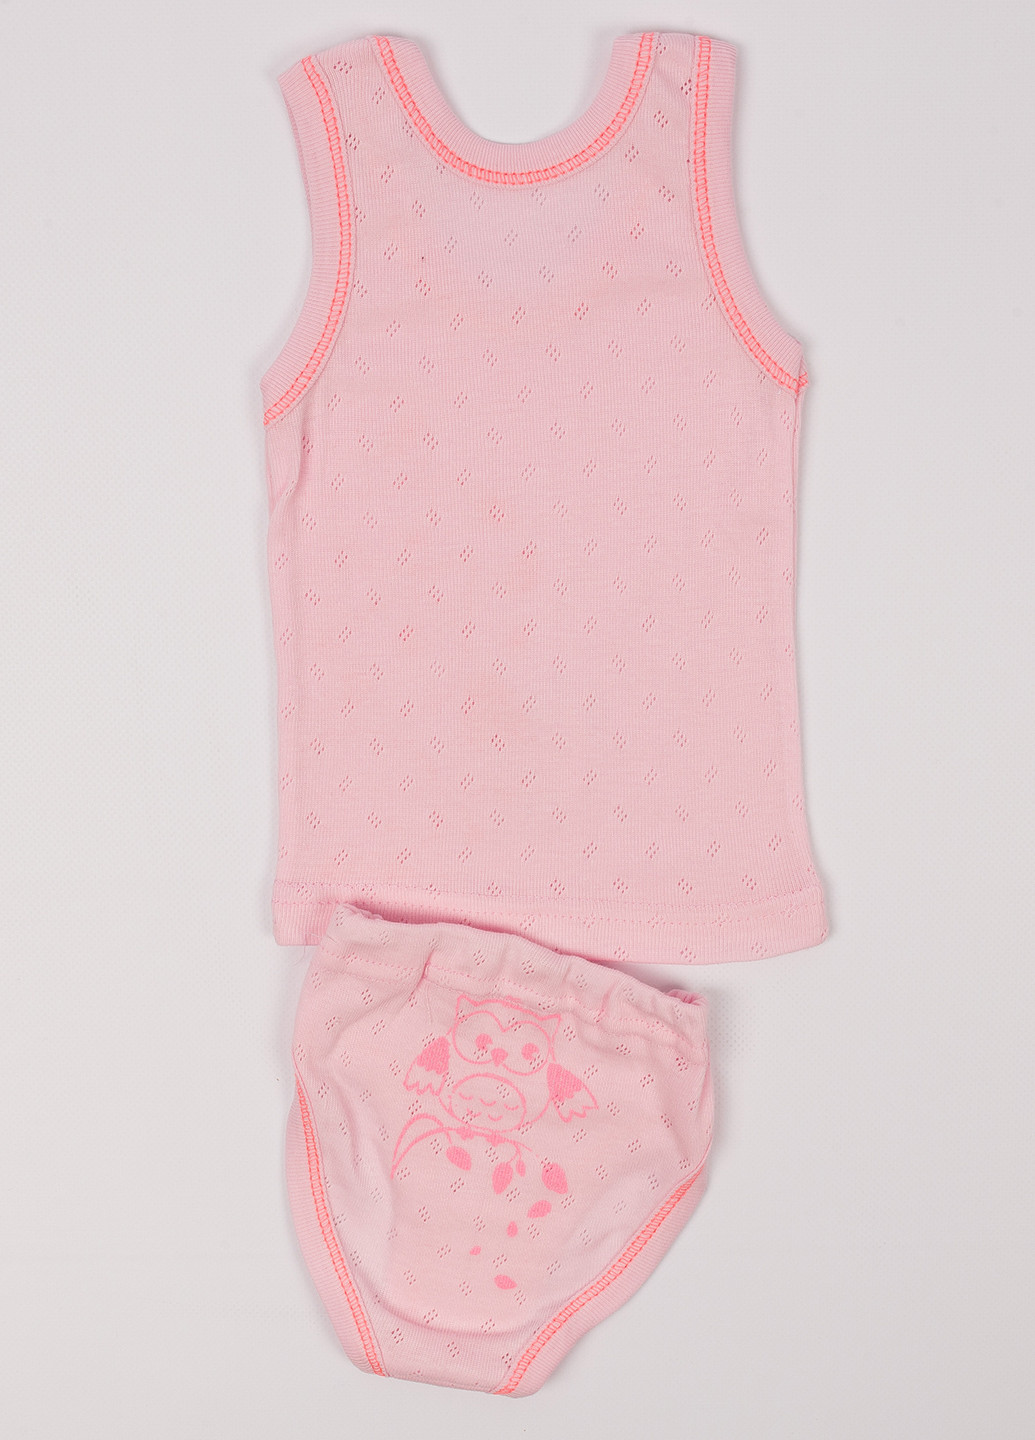 Розовый демисезонный комплект (майка,трусы) Пташка текстиль